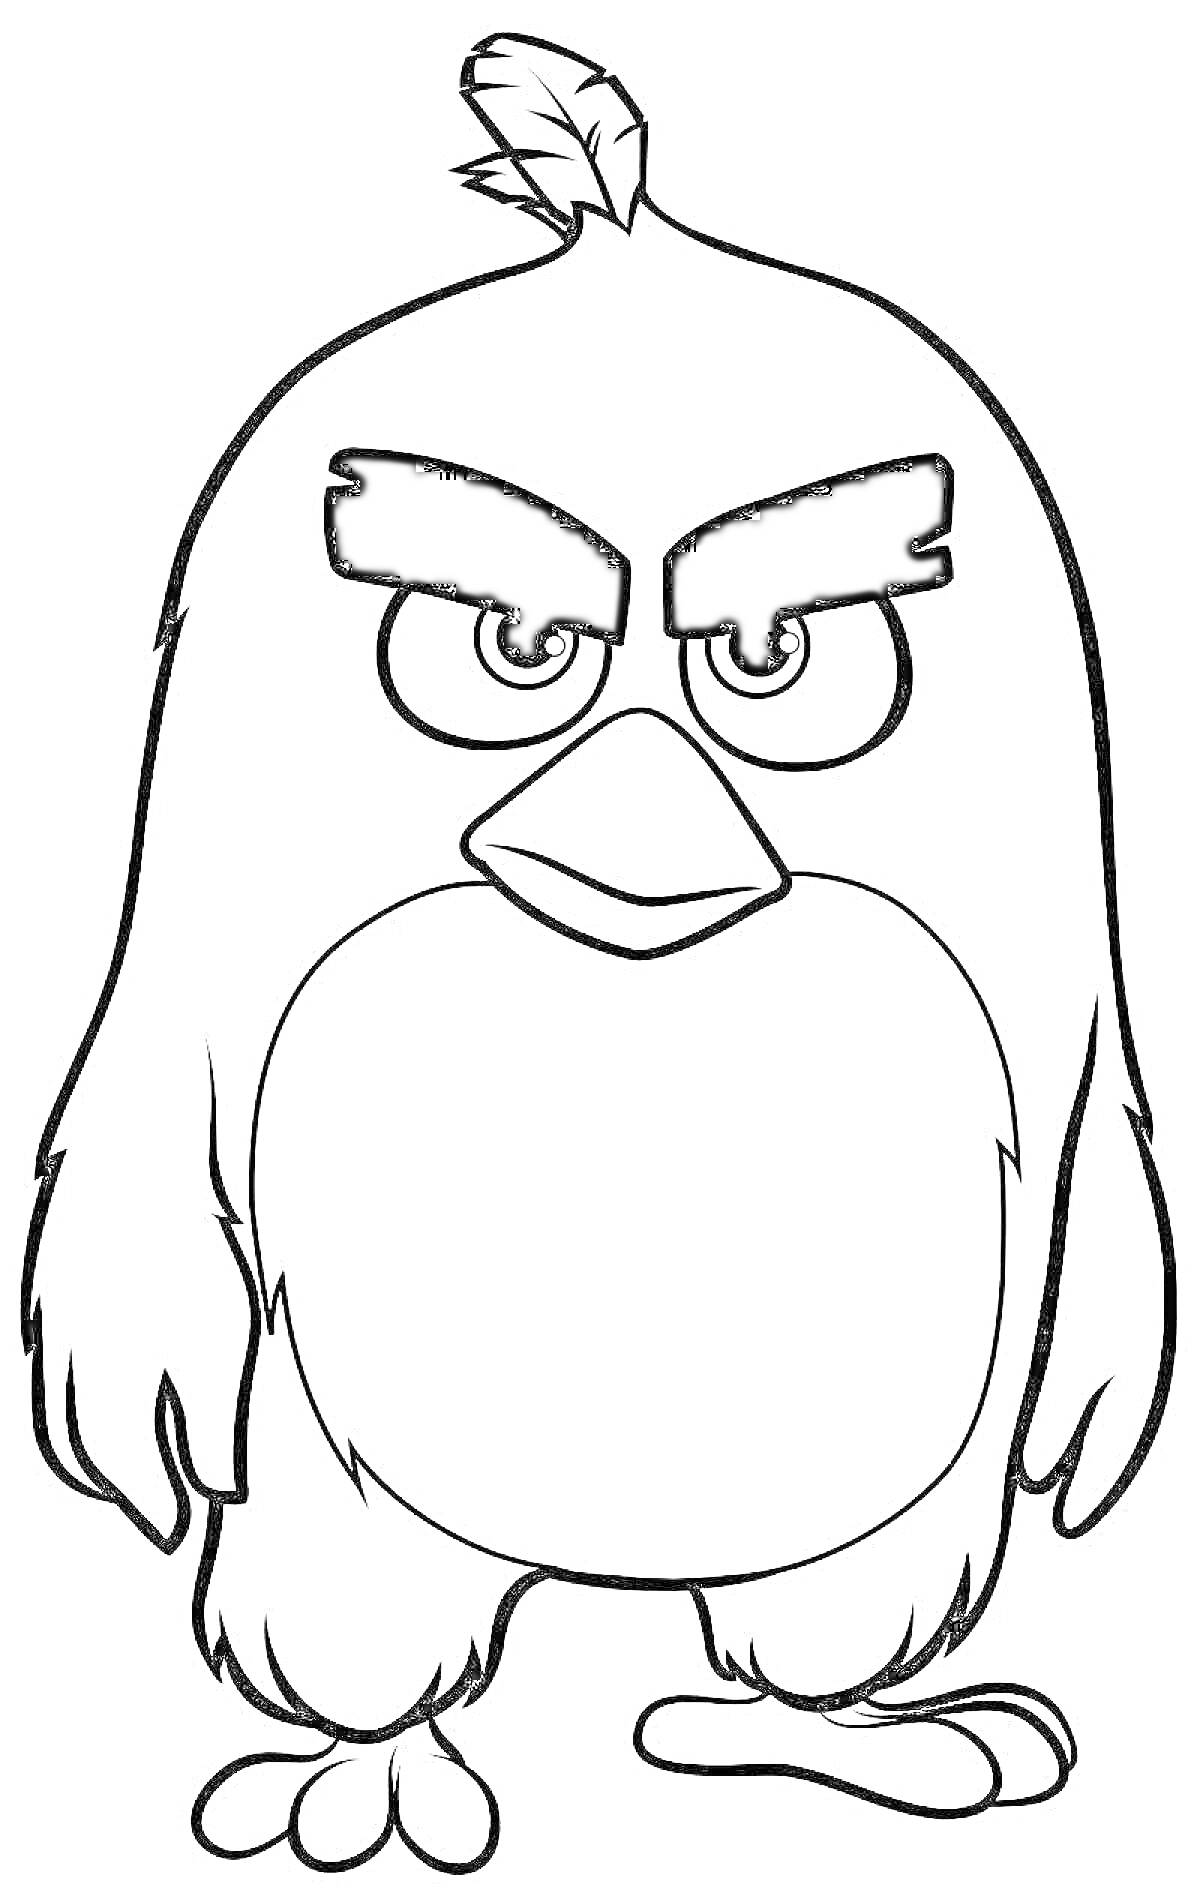 Раскраска Птица с сердитым выражением лица, мультипликационный персонаж, стоящий прямо с поднятым хохолком